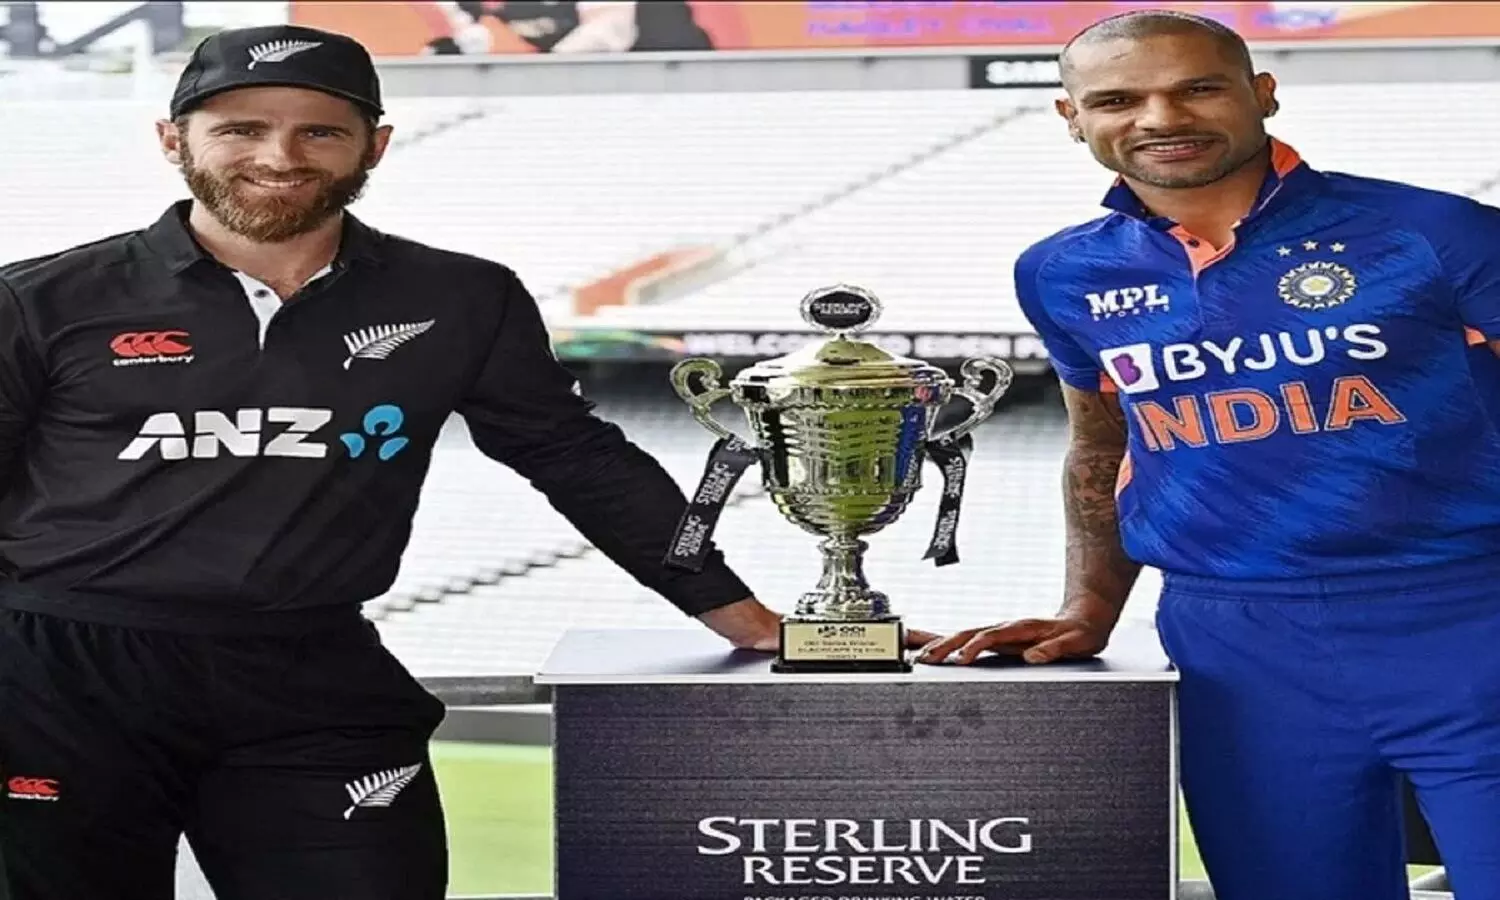 NZ vs IND 3rd ODI